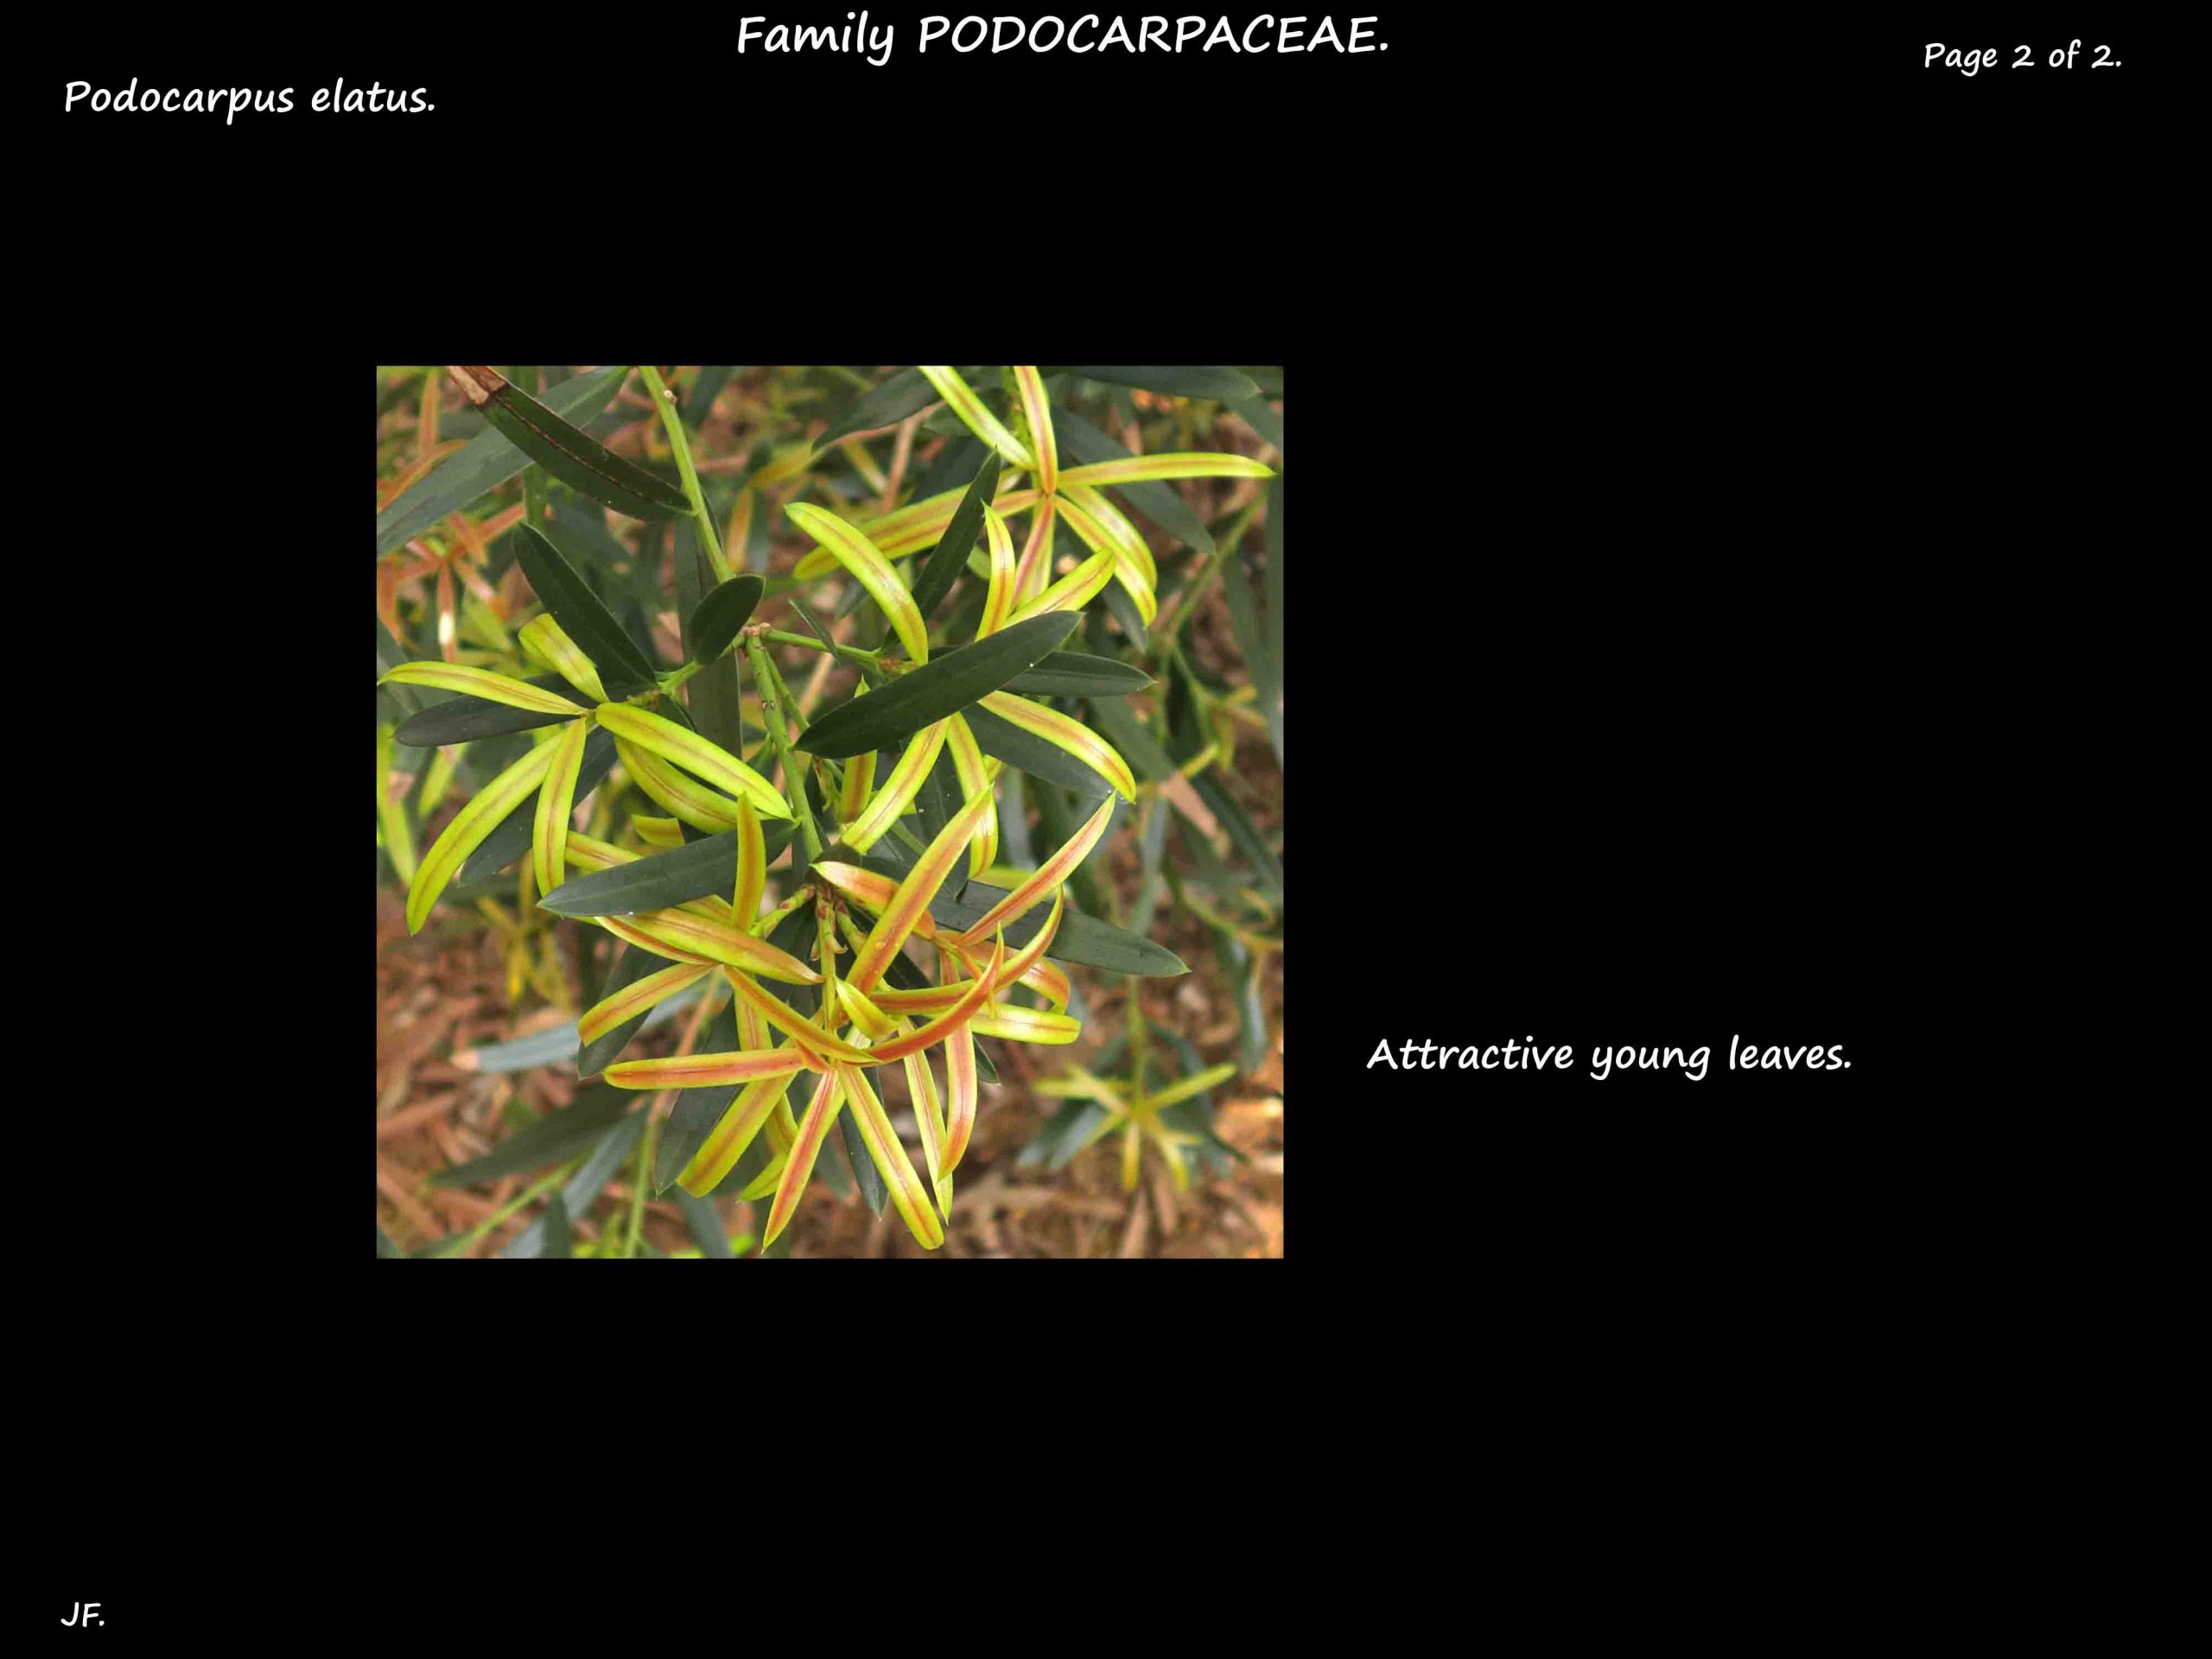 2 Podocarpus elatus juvenile leaves